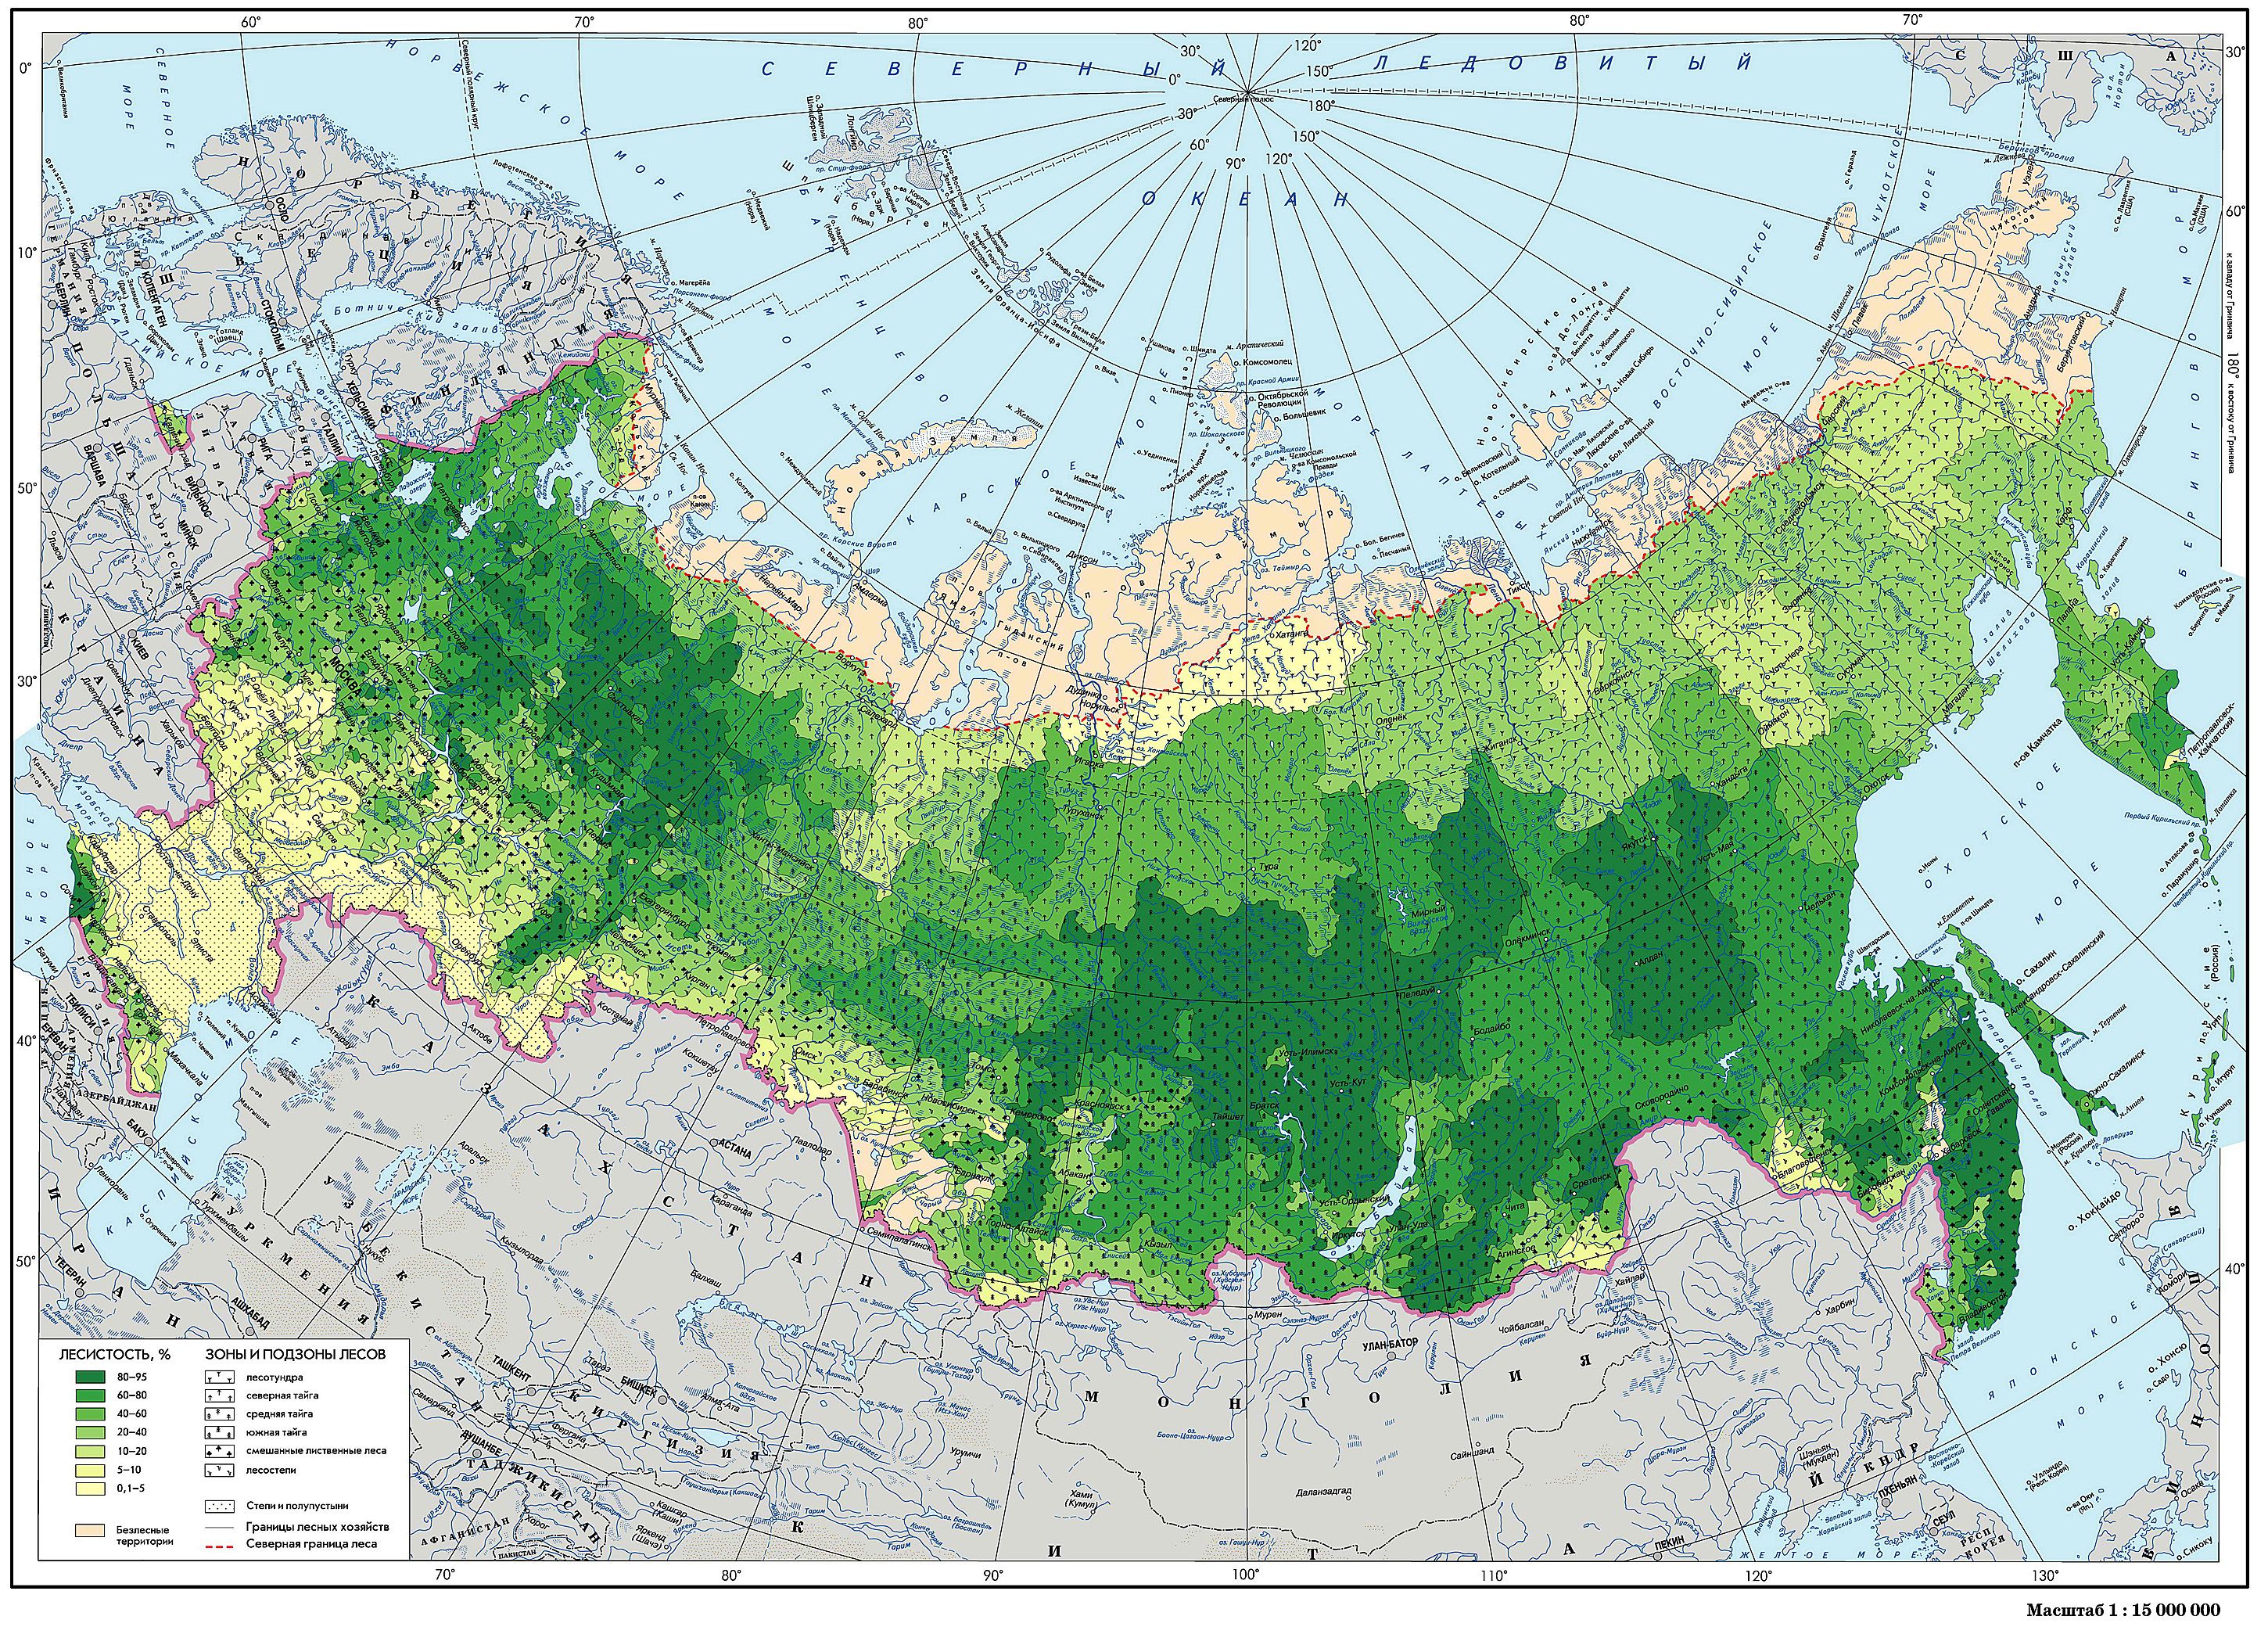 Хвойные леса на карте. Карта лесов РФ. Карта хвойных лесов России. Хвойные леса России на карте. Карта лесов центральной России.